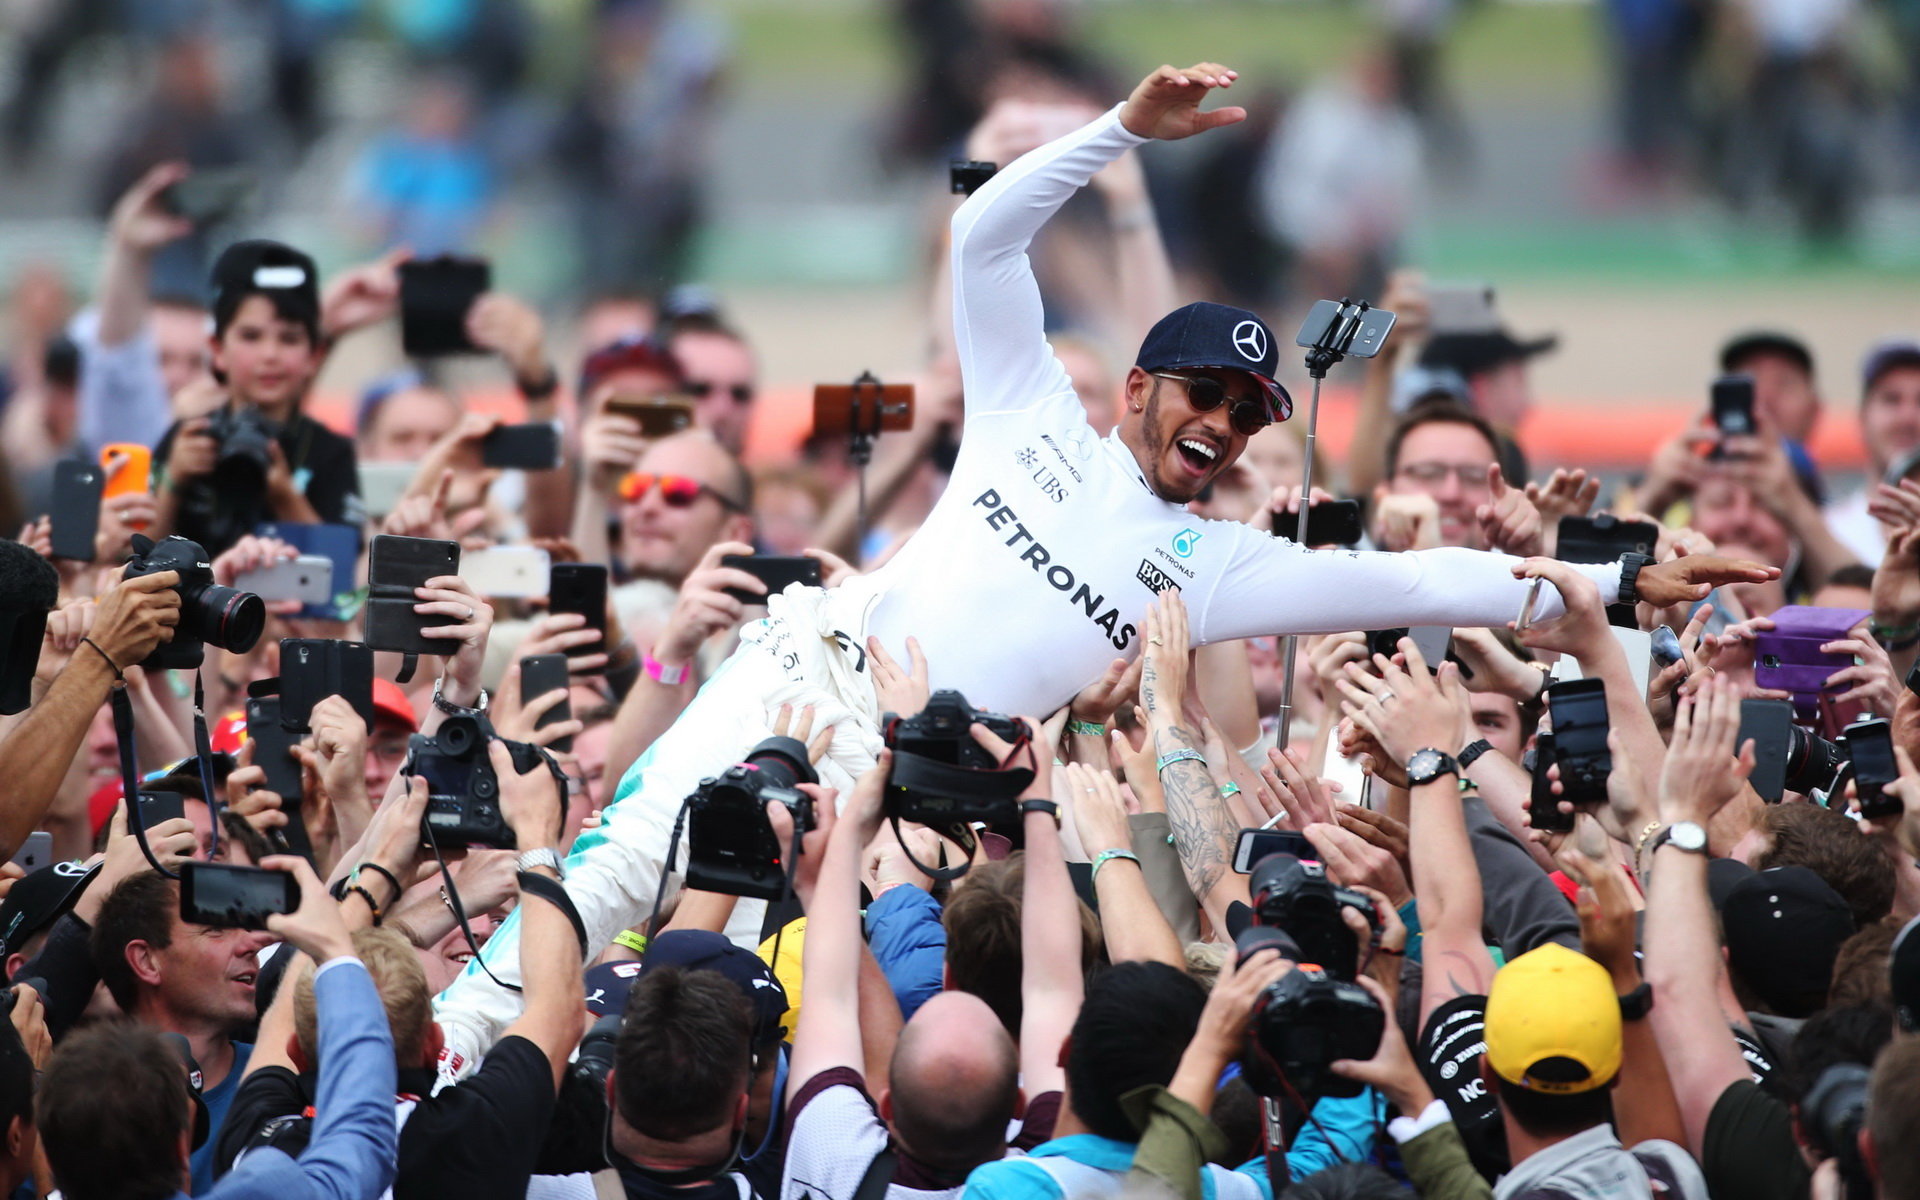 Lewis Hamilton jako vítěz po závodě v Silverstone